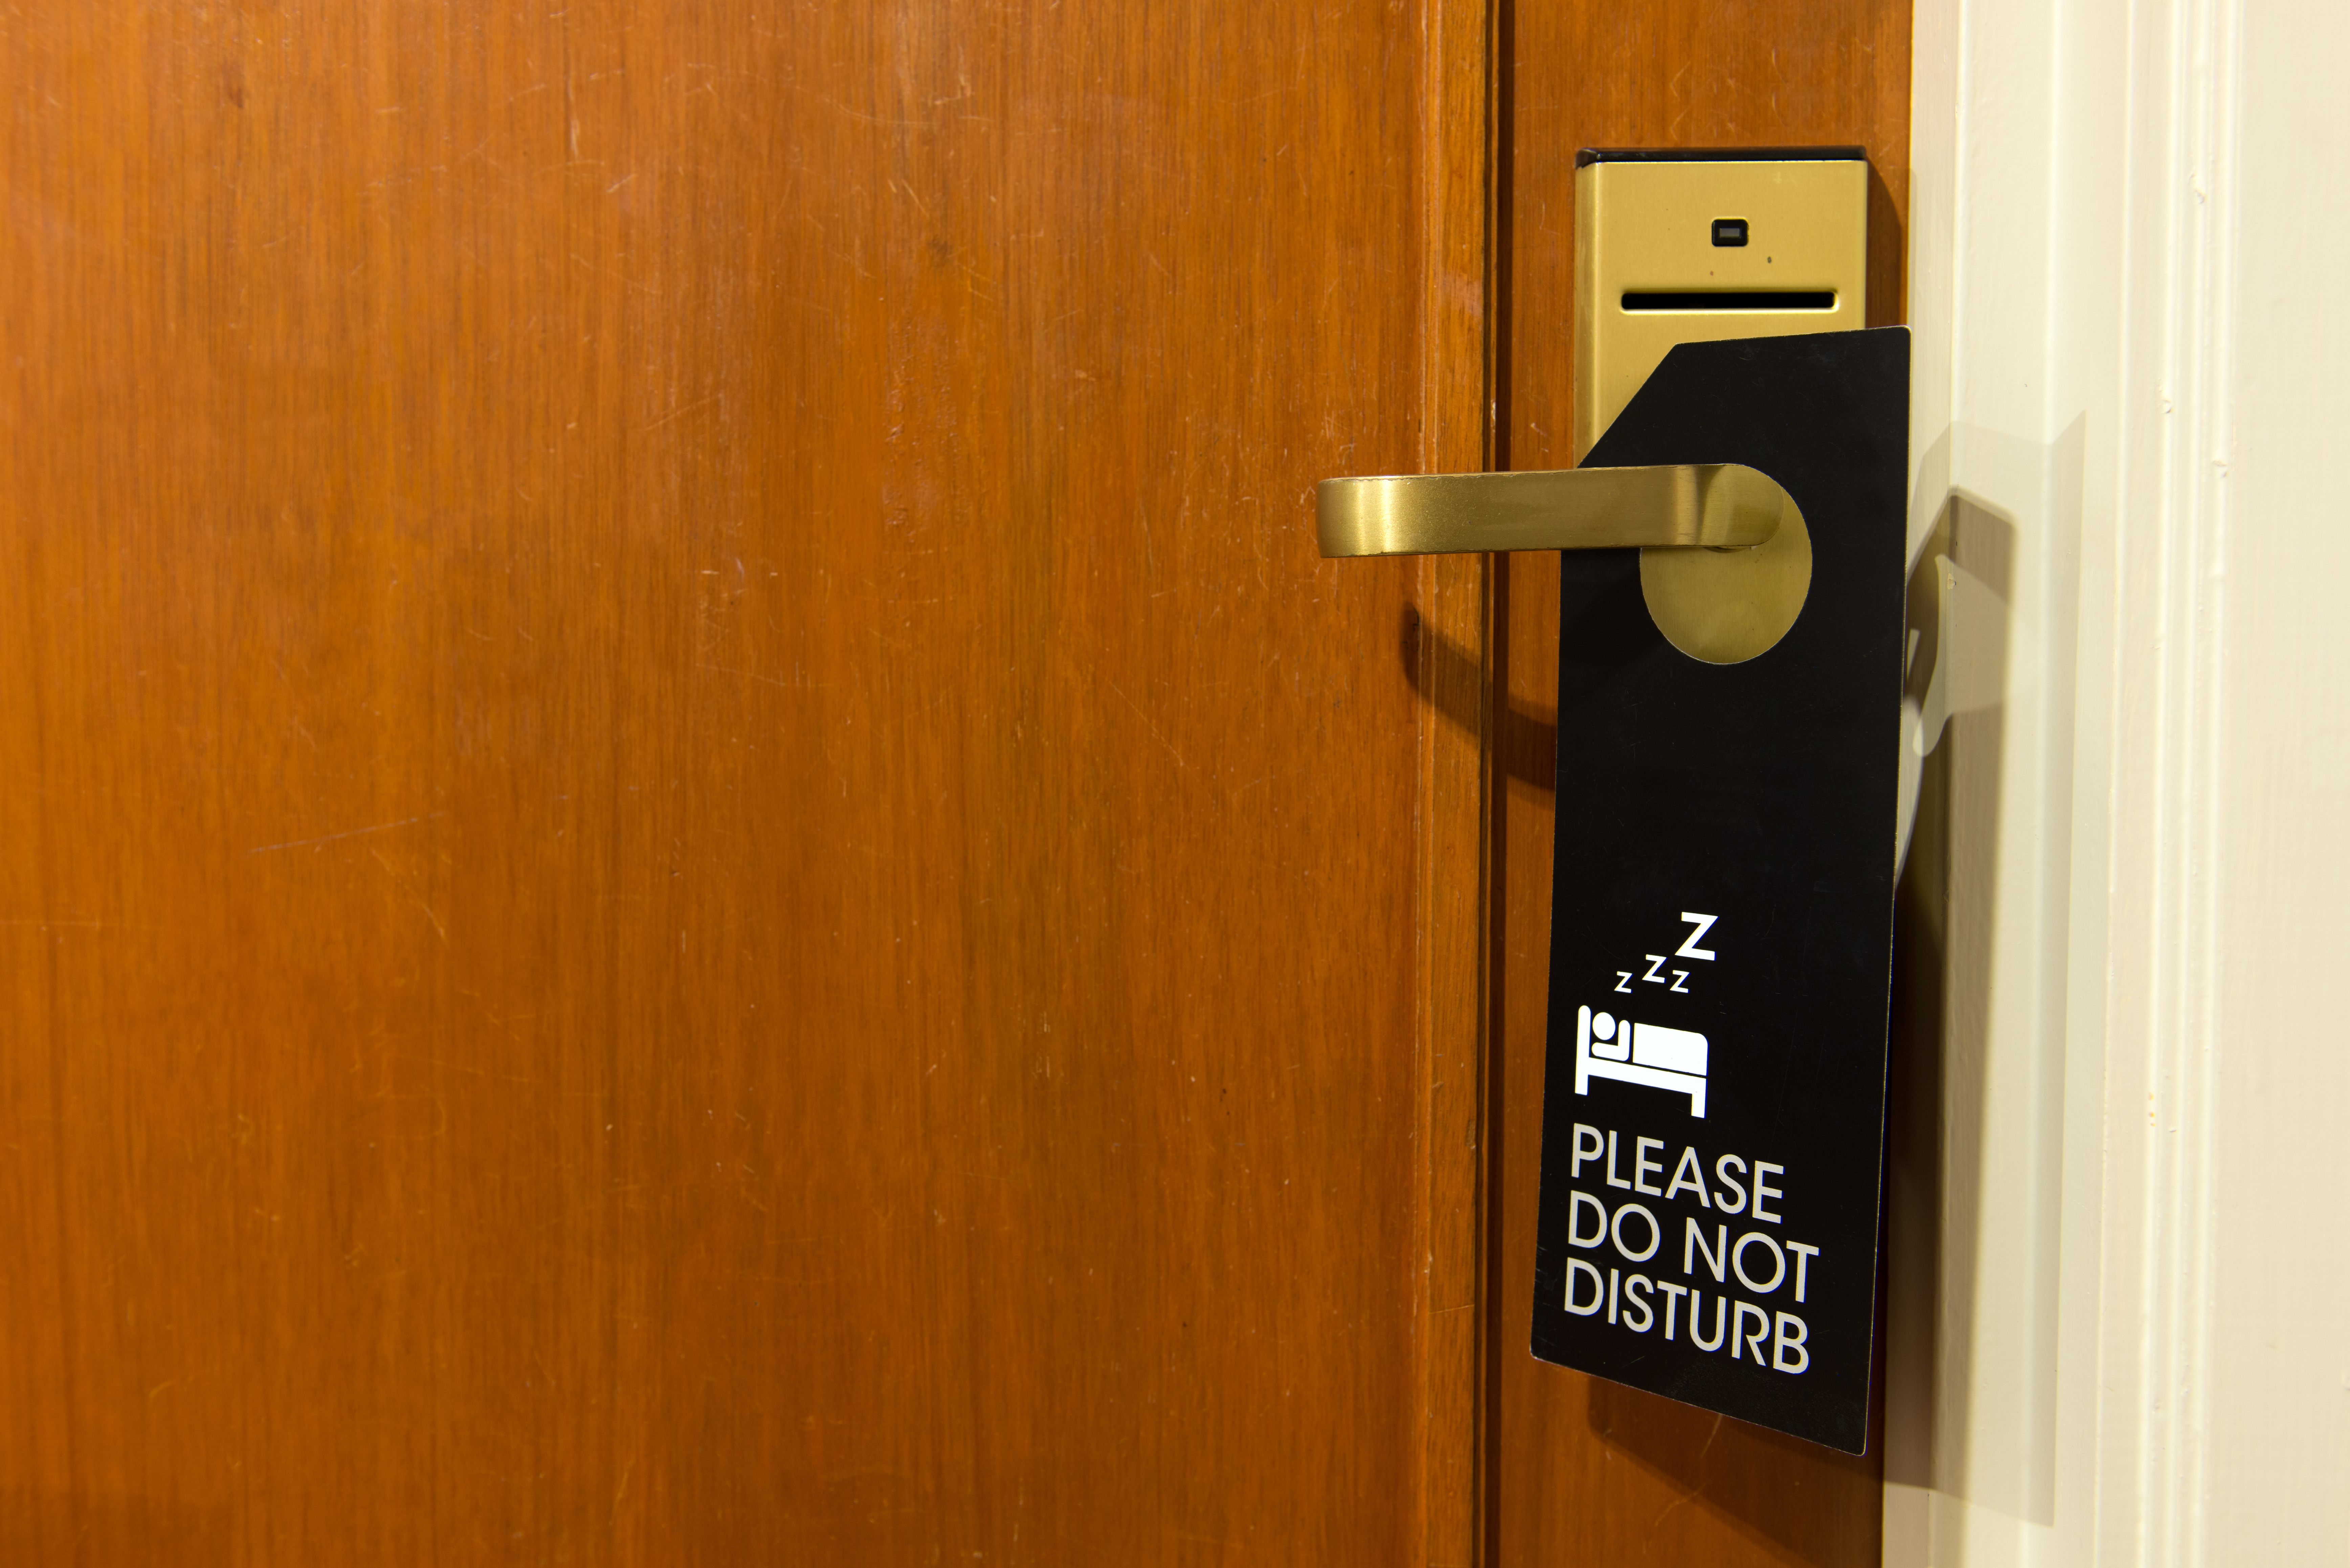 A "do not disturb" sign on a doorknob | Source: Shutterstock